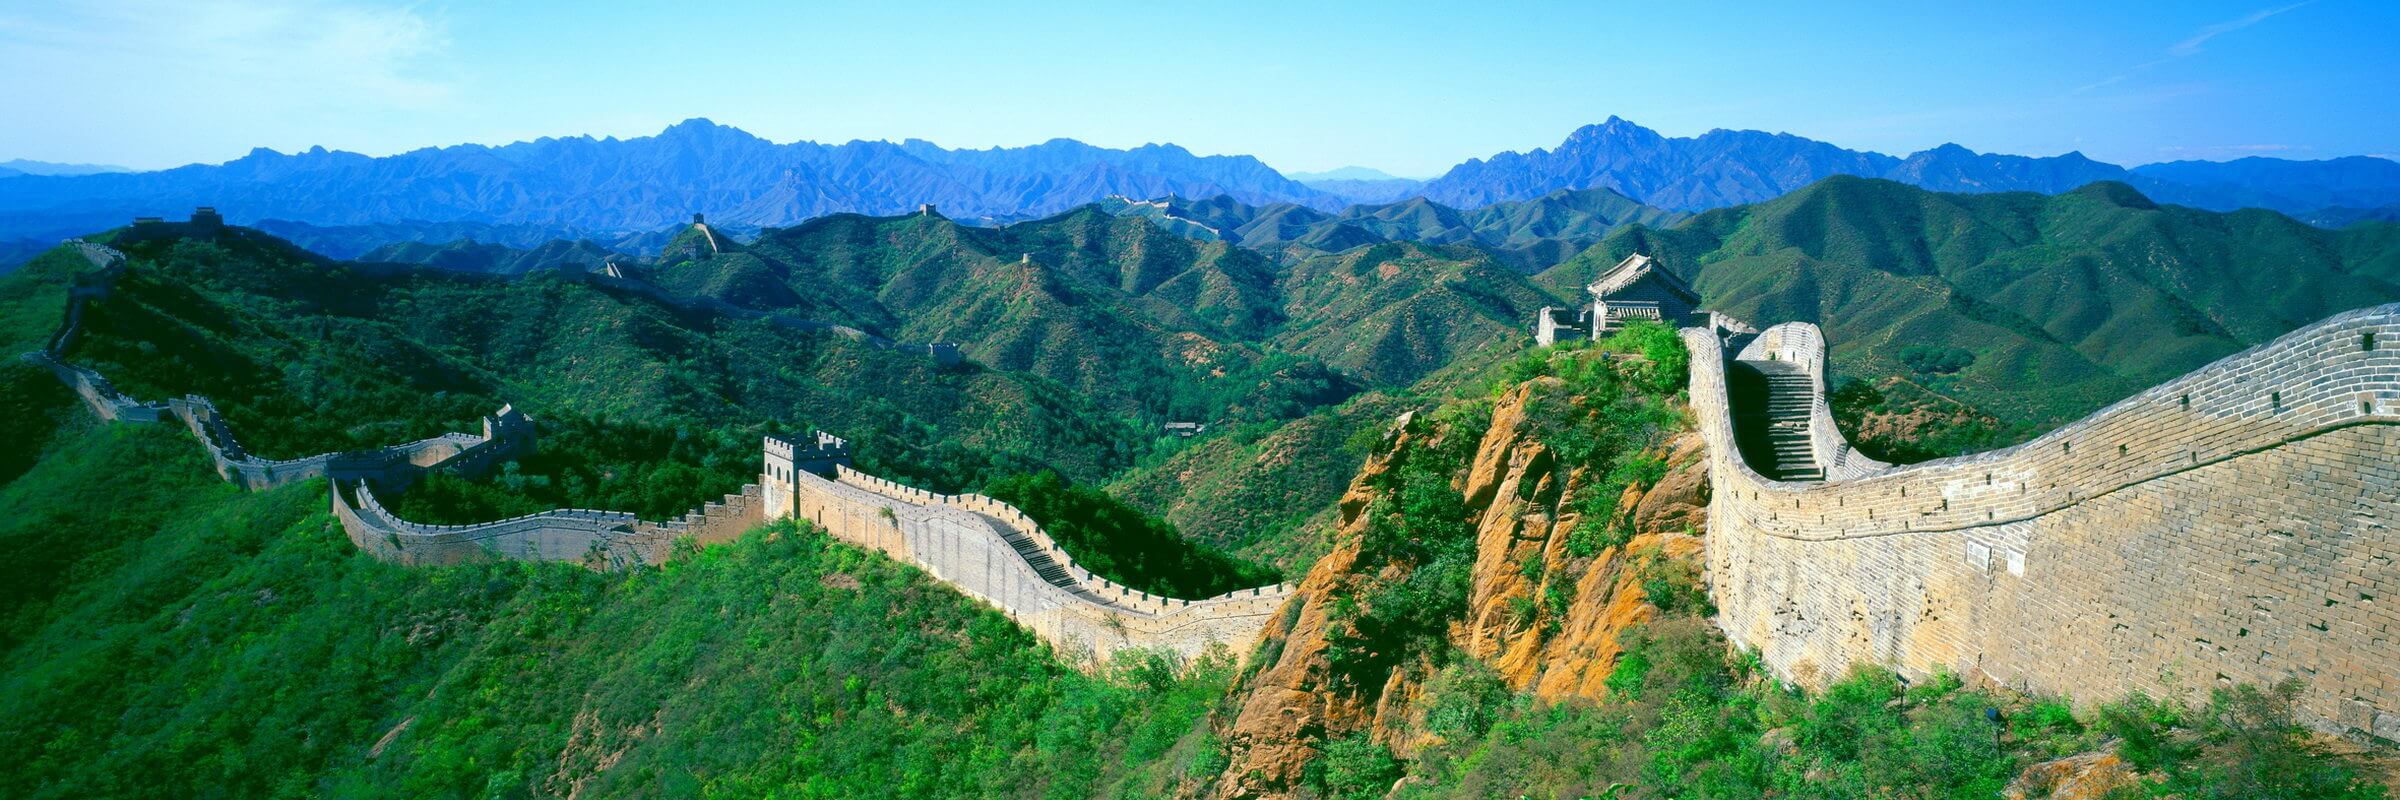 Die Chinesische Mauer, auch große Mauer genannt, Wahrzeichen von China und die bekannteste Sehenswürdigkeit in der Nähe von Peking bei Badaling